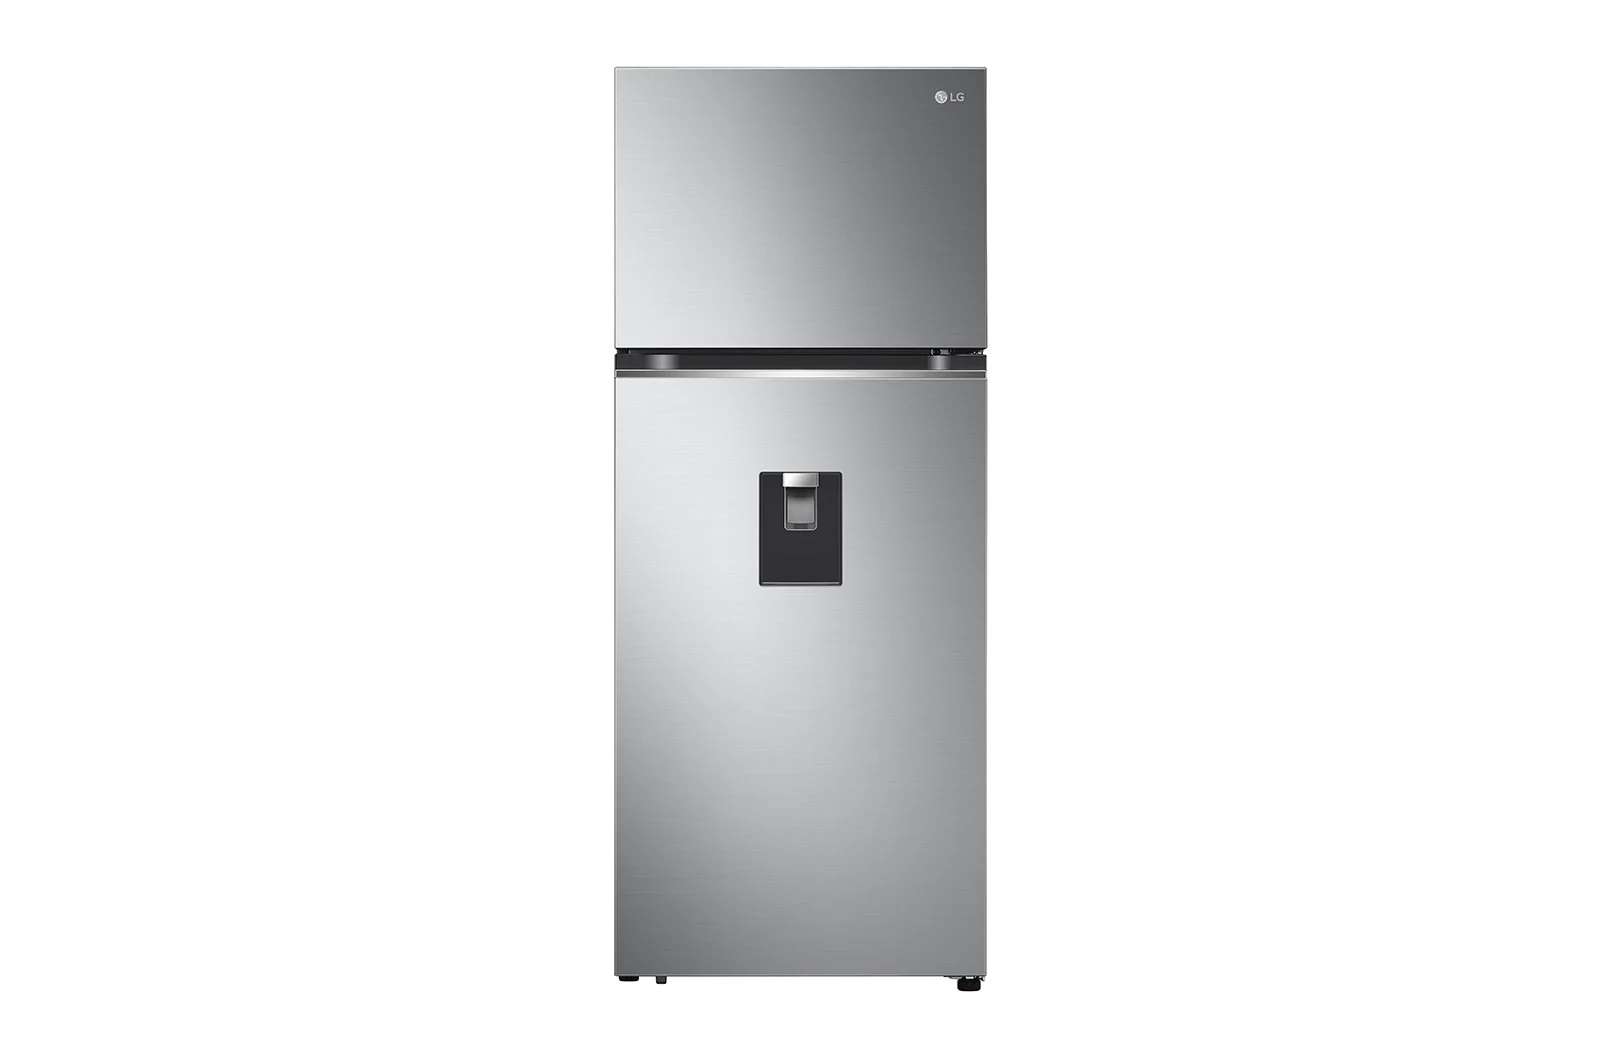 Tủ lạnh LG GN-D332PS inverter 334 lít - Chính Hãng